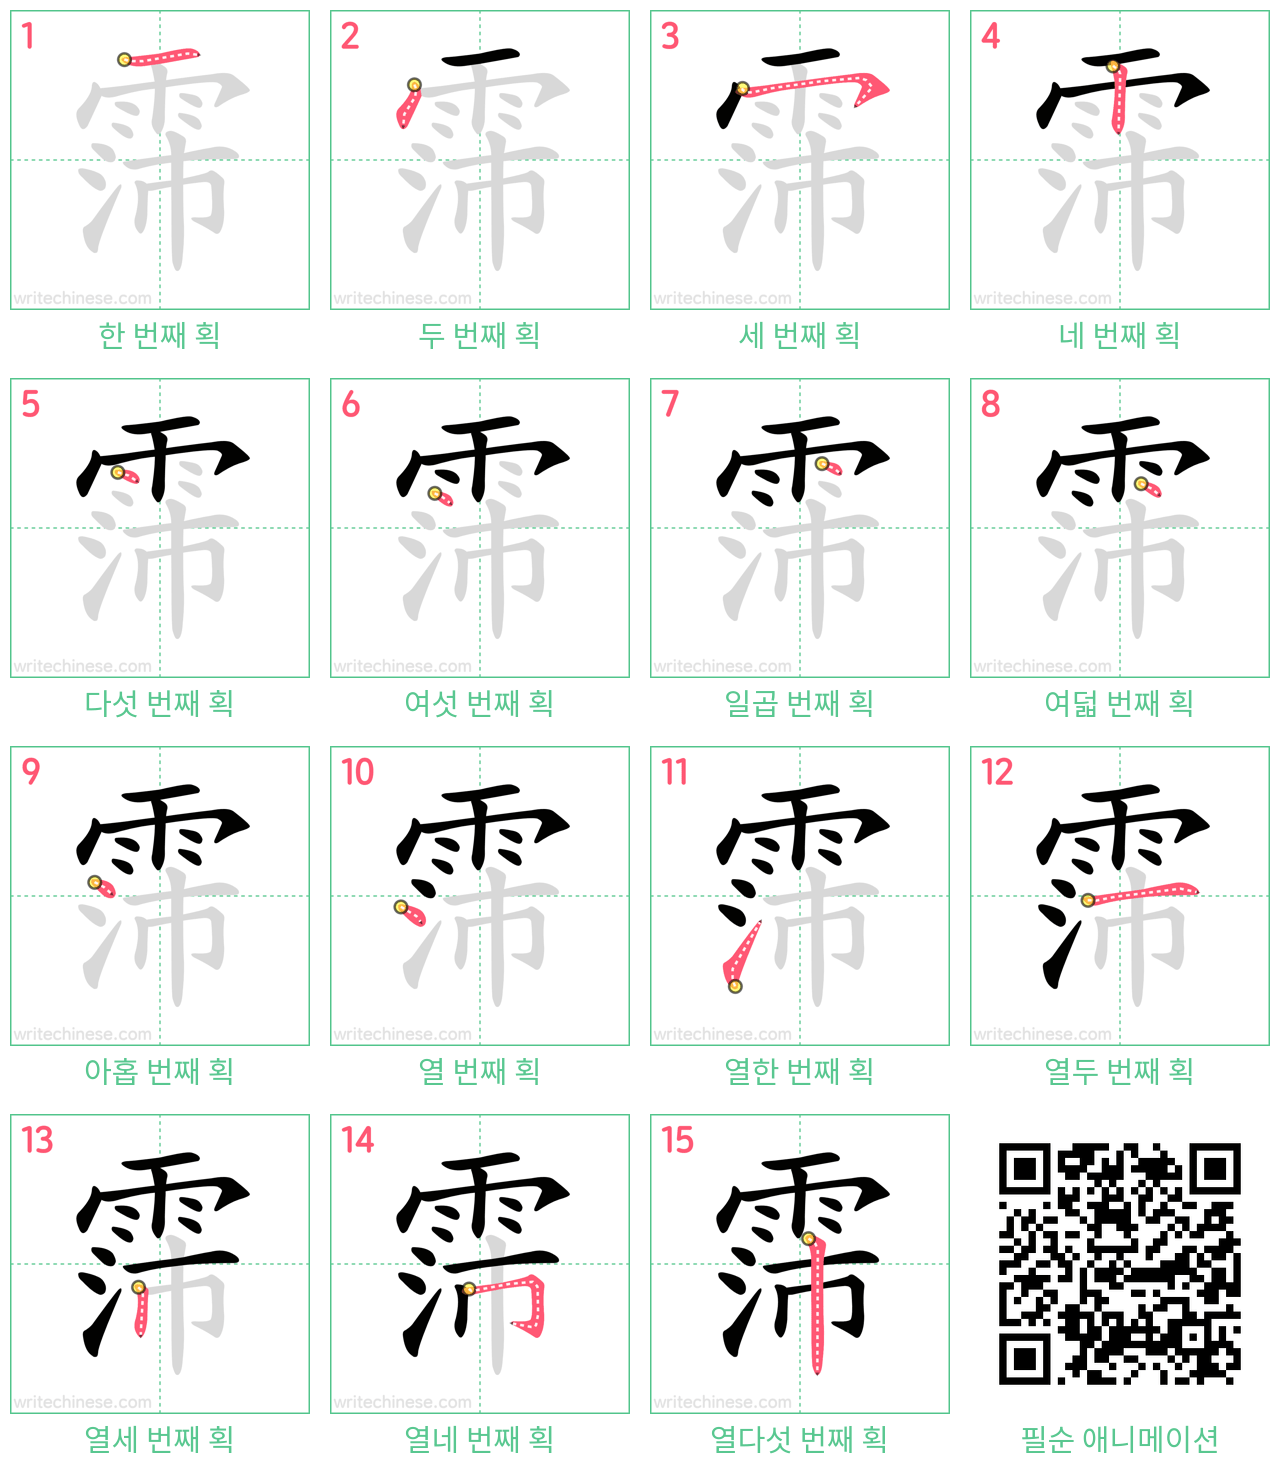 霈 step-by-step stroke order diagrams